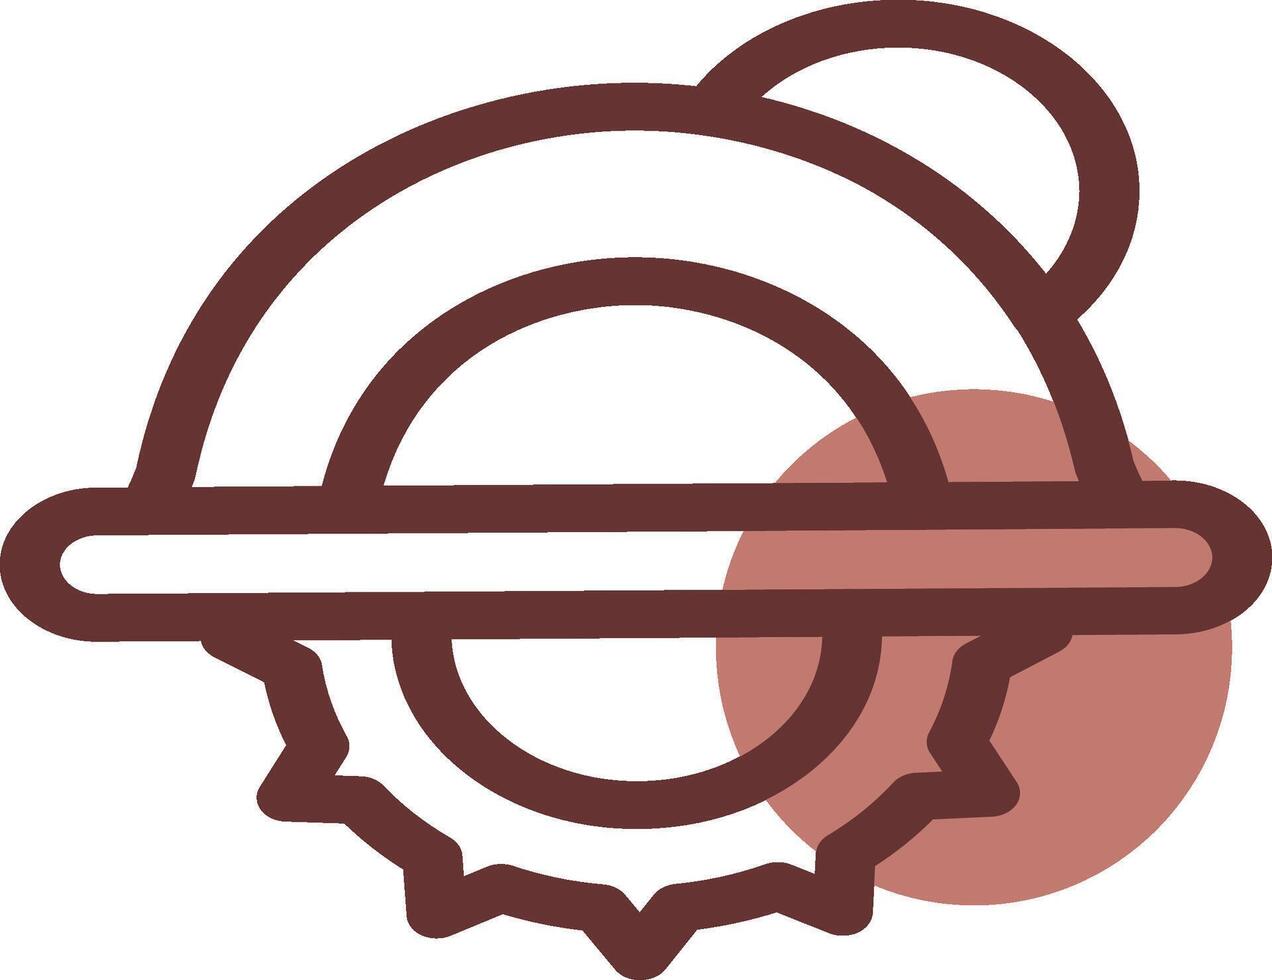 Circular Saw Creative Icon Design vector